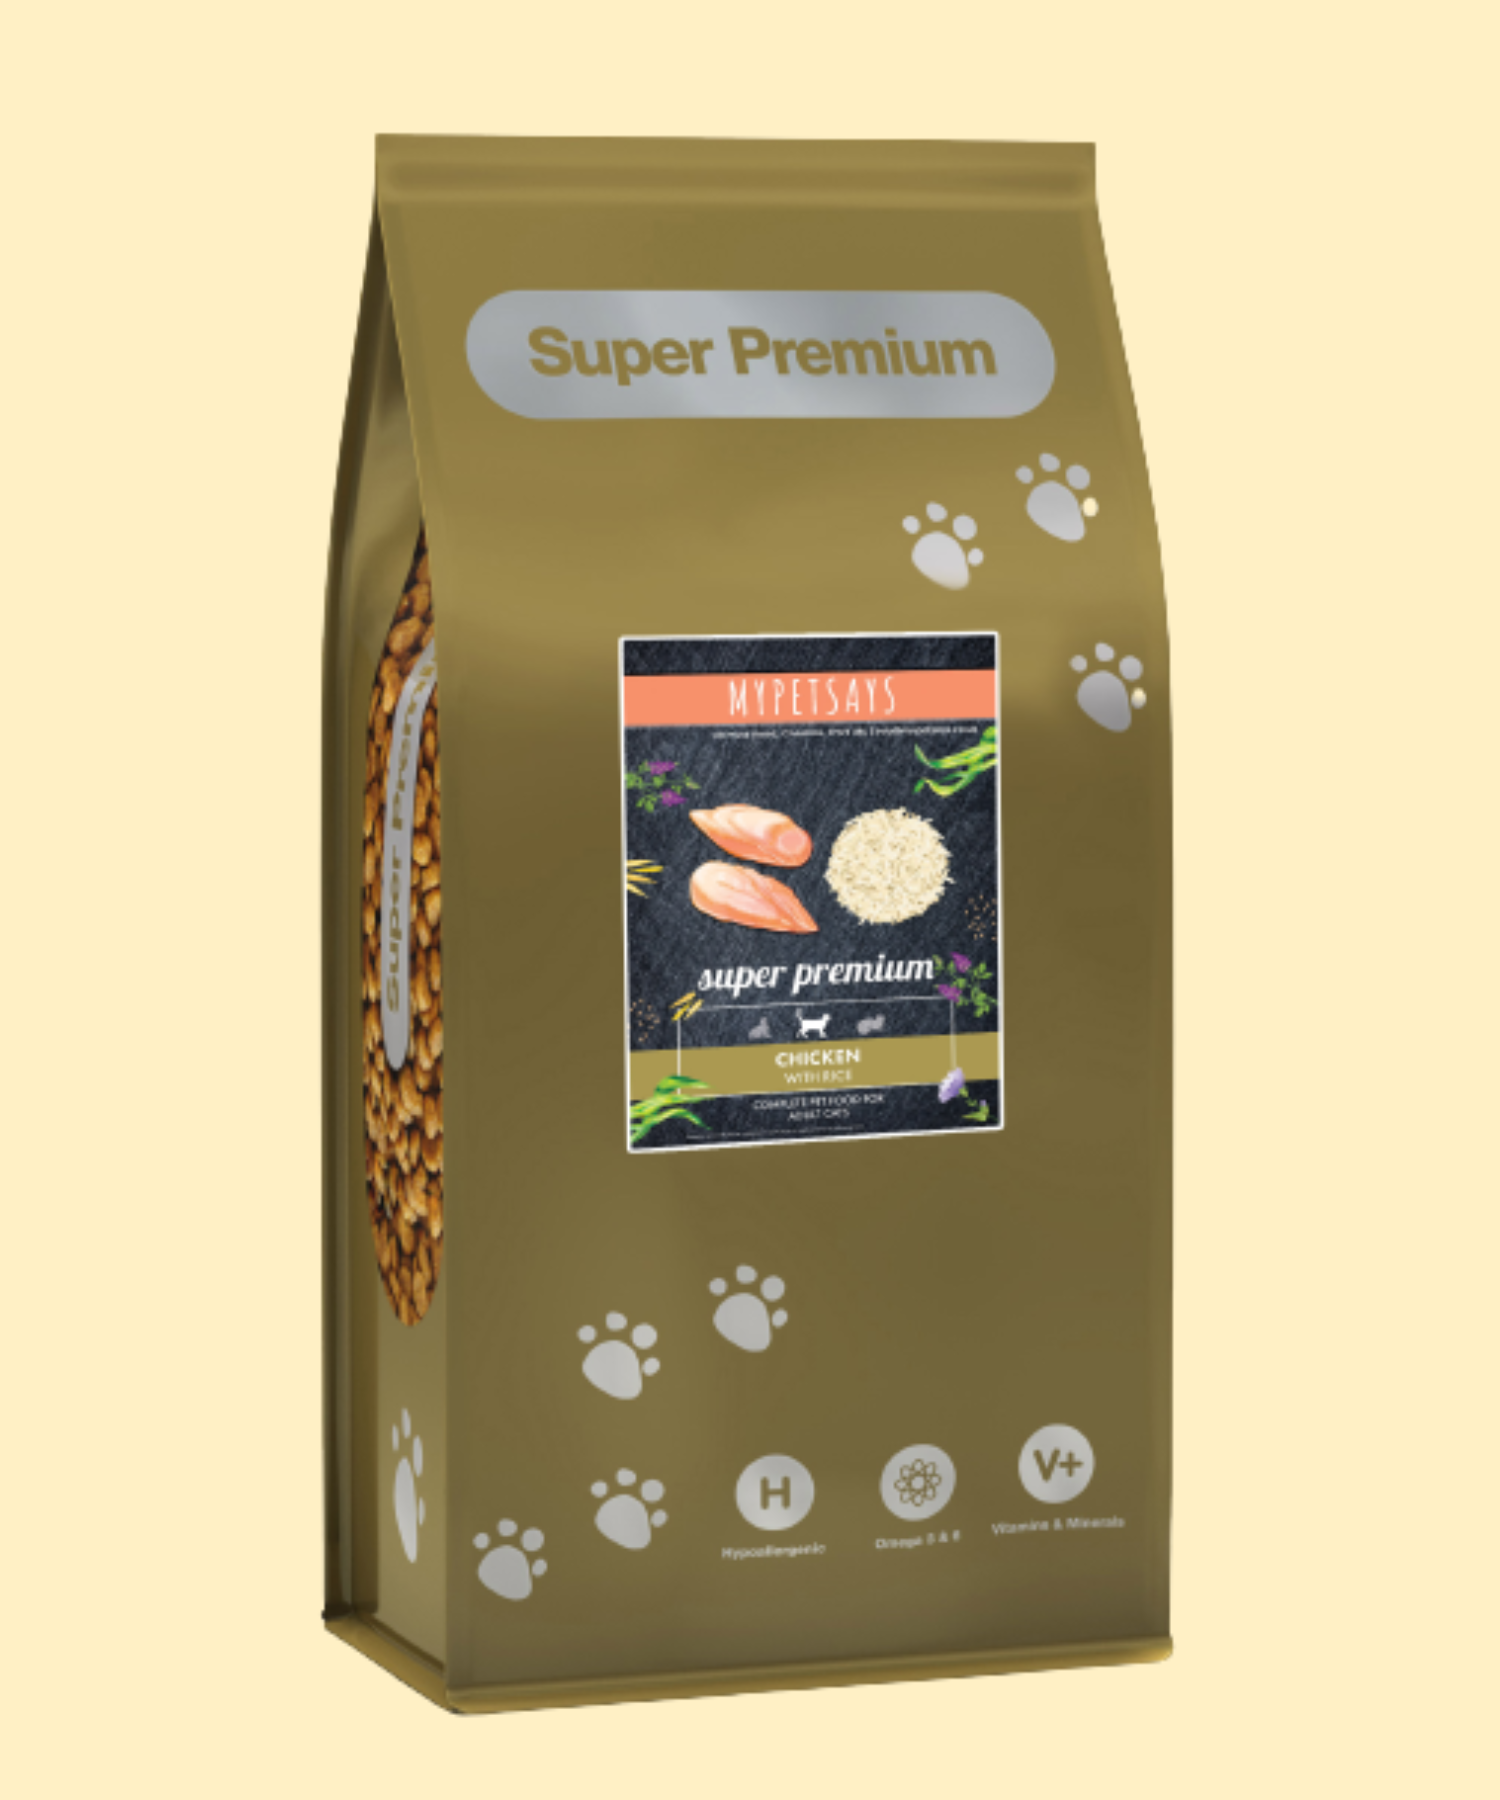 Super premium cat food